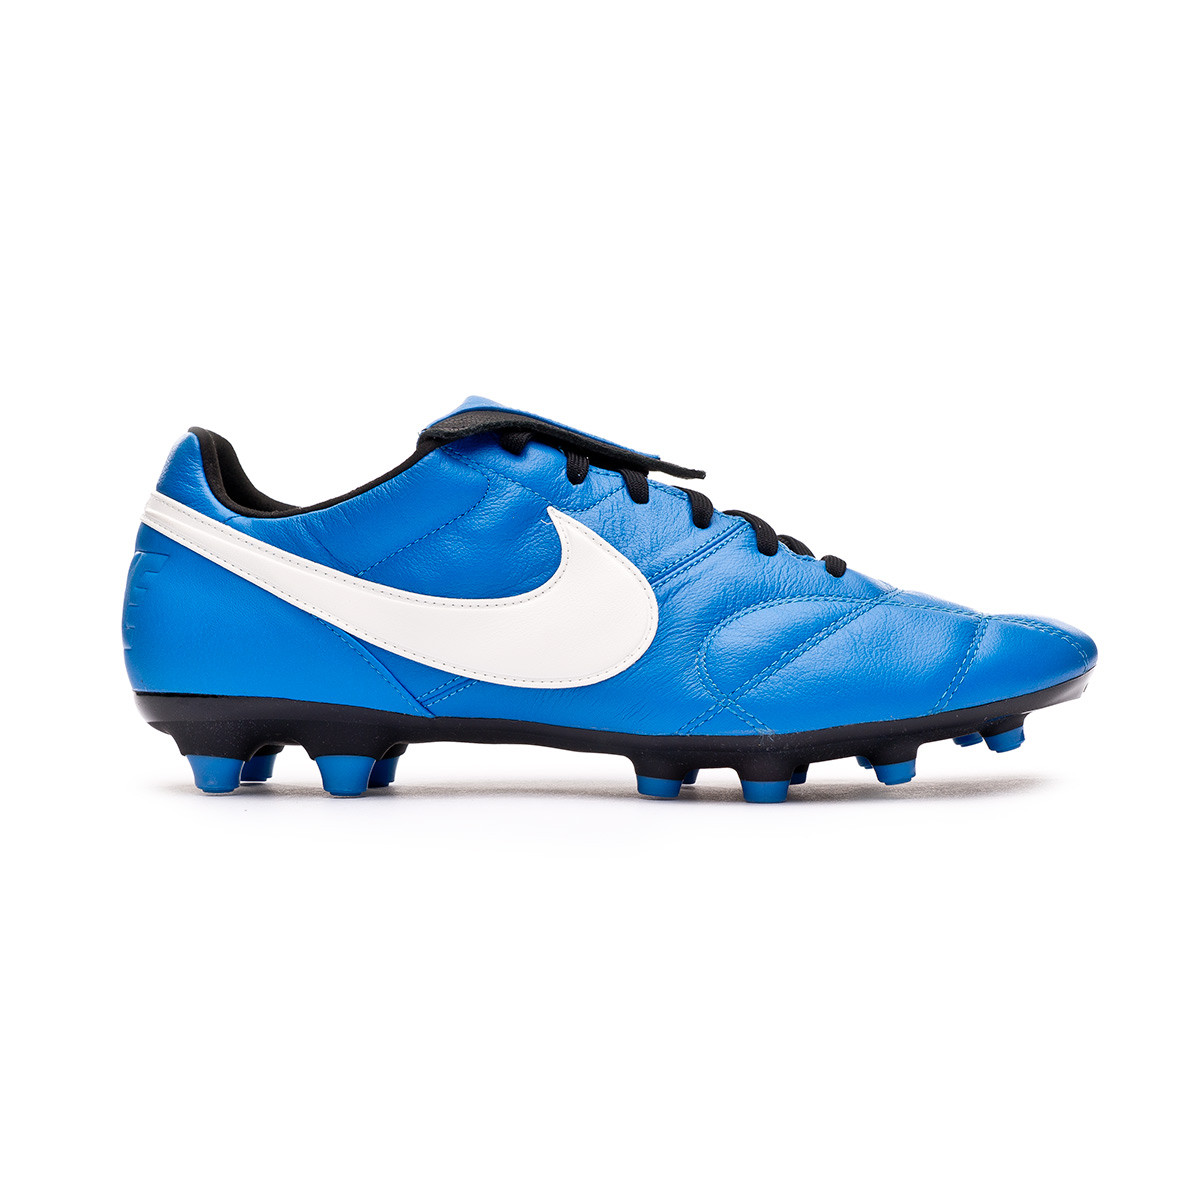 light blue football boots